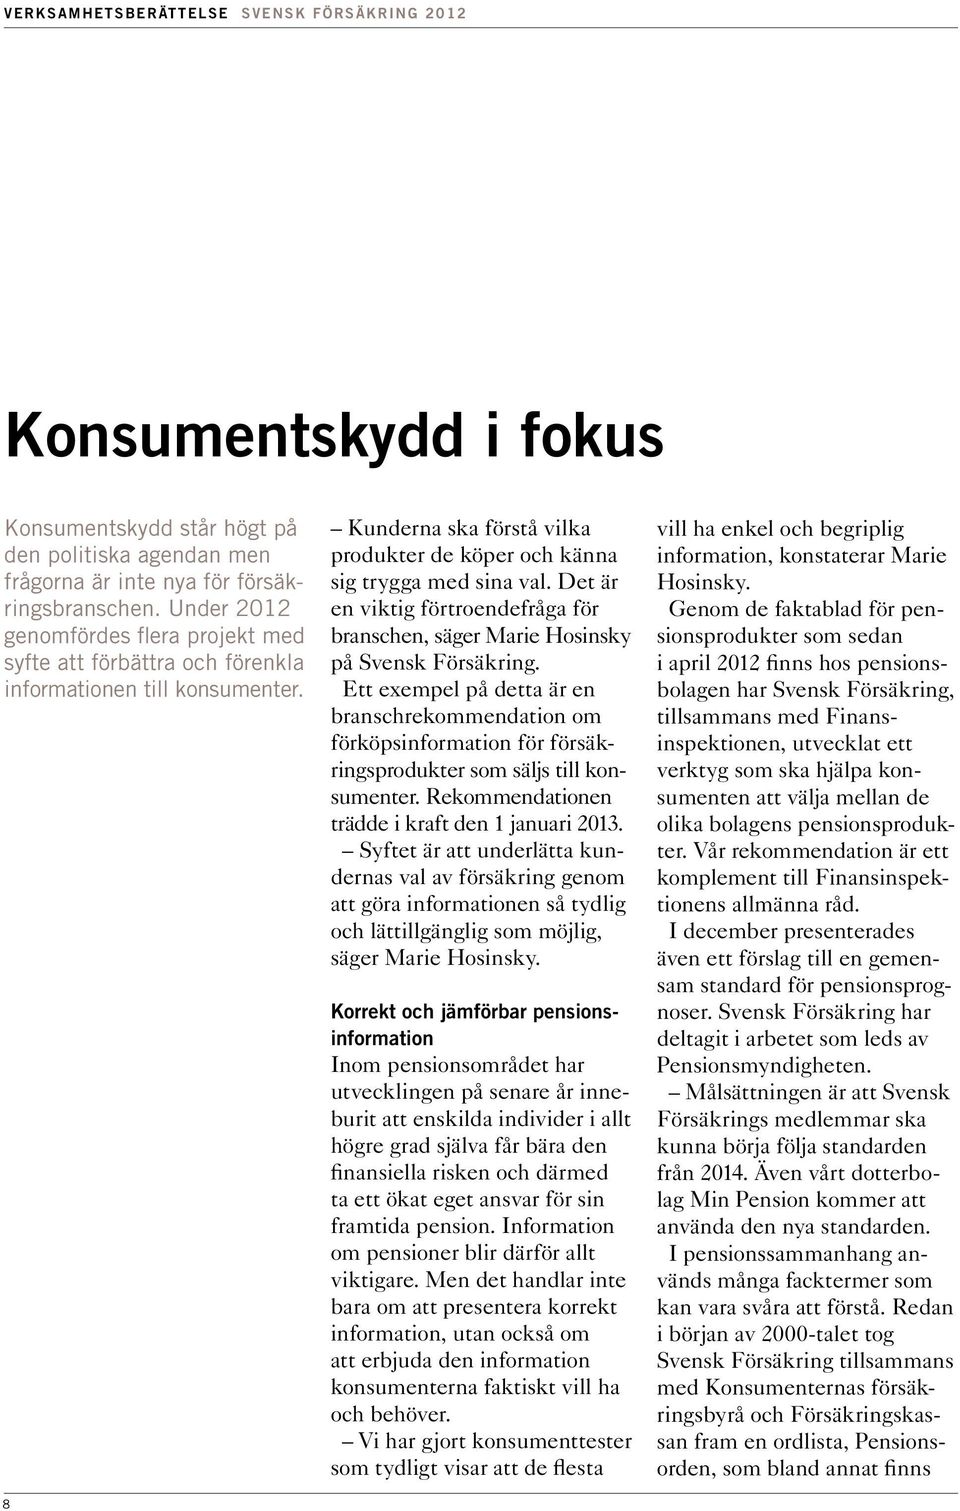 Det är en viktig förtroendefråga för branschen, säger Marie Hosinsky på Svensk Försäkring.